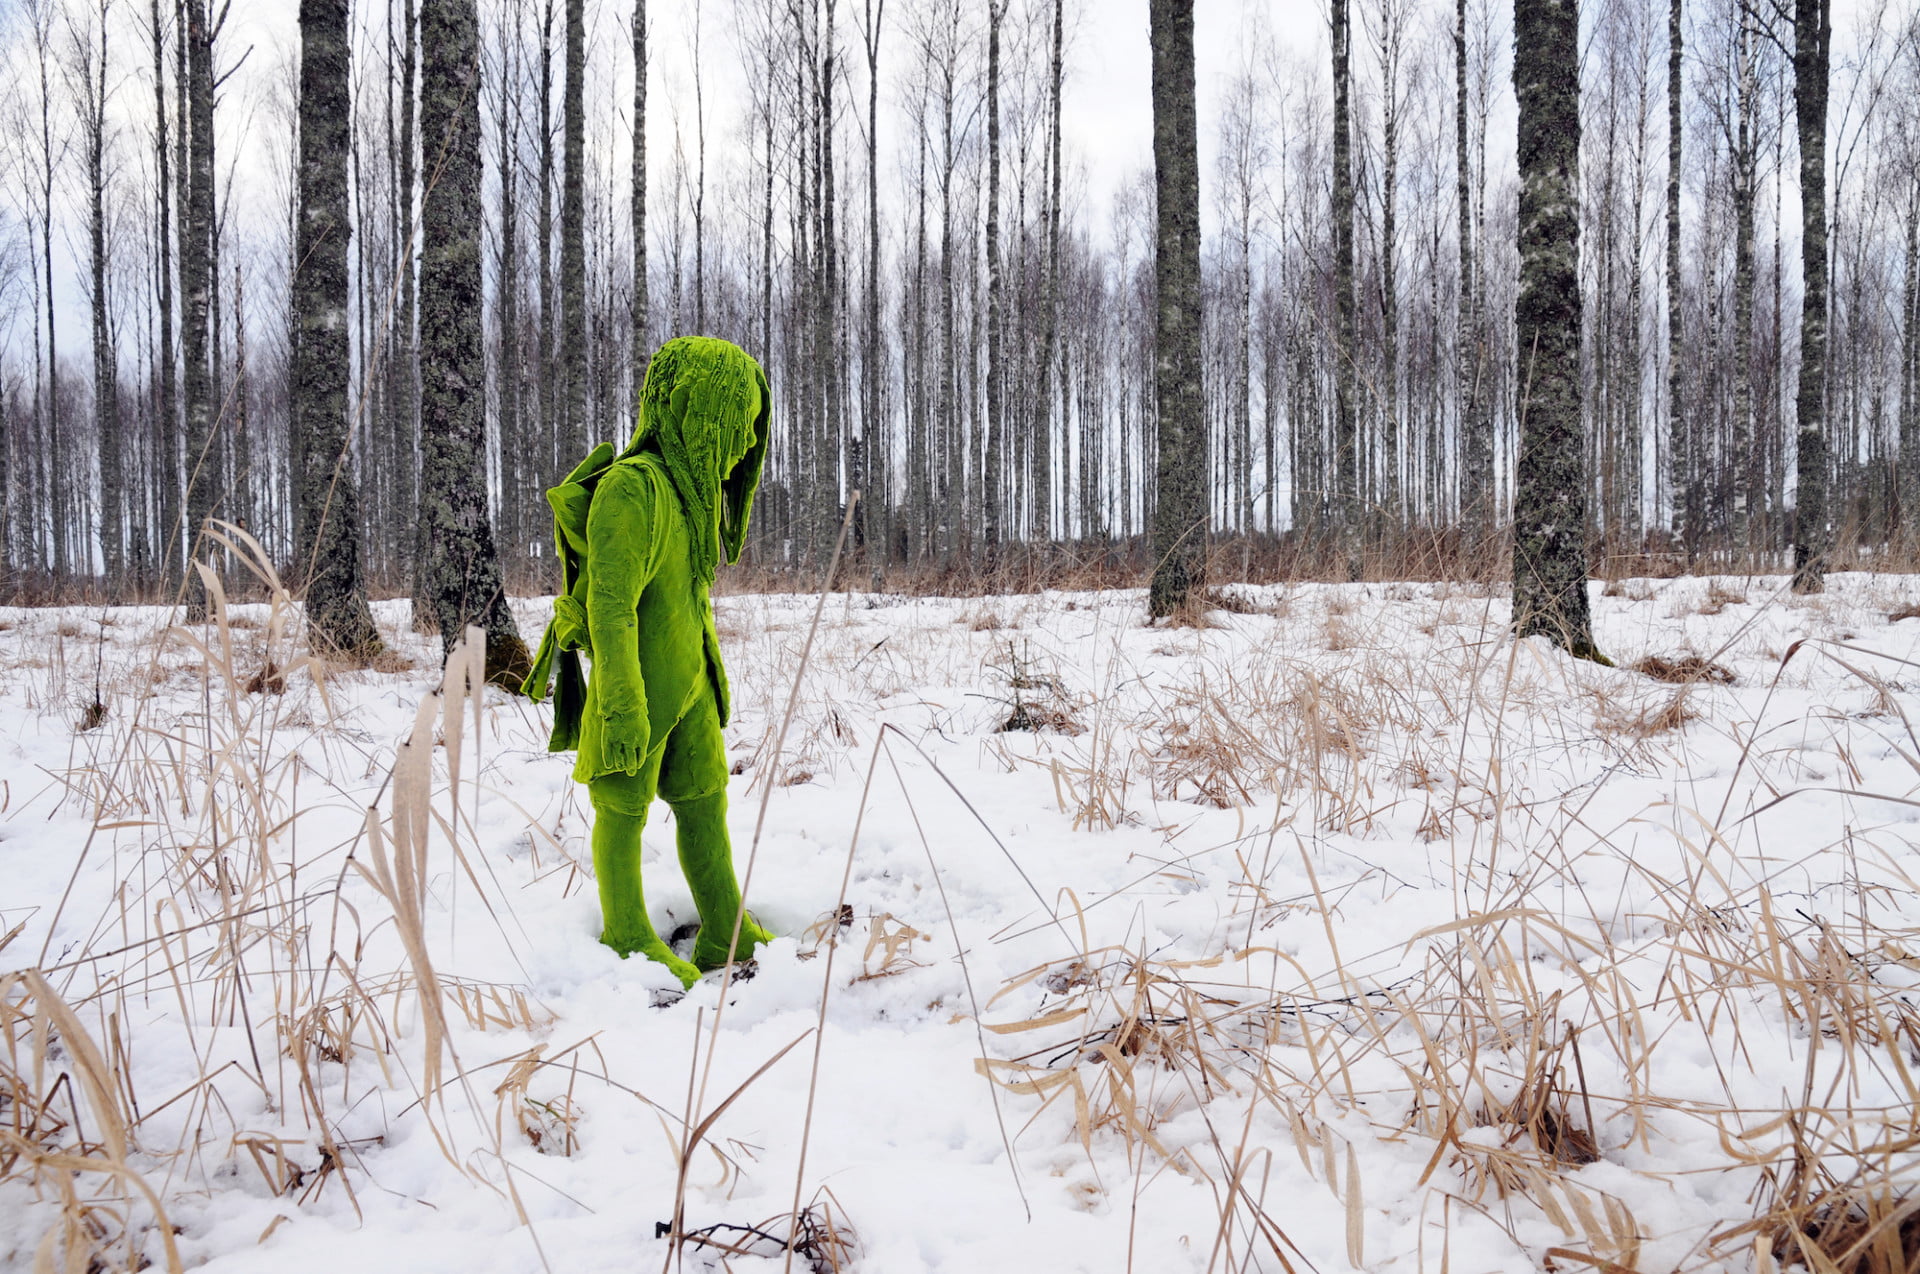 Uma fotografia num bosque nevado de uma escultura cerâmica que foi revestida em flocos verdes para fazer parecer que está revestida de musgo. A escultura é de uma figura jovem de perfil que parece caminhar através da neve.